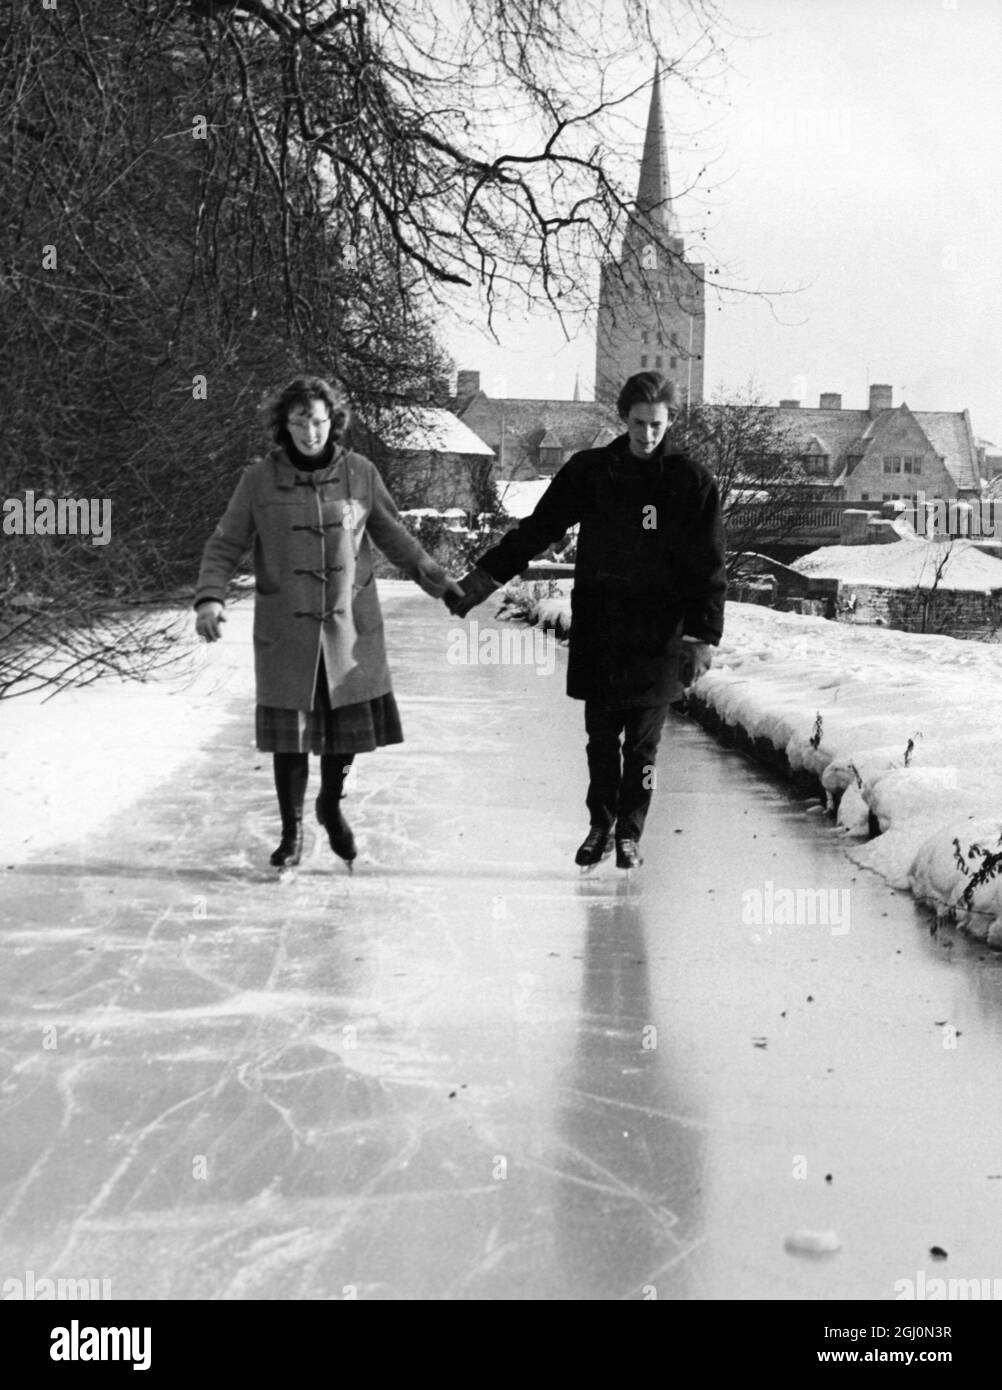 Studenten in Oxford profitieren von dem gefrorenen Fluss und Kanal, um die angebotenen natürlichen Schlittschuhmöglichkeiten zu genießen. Studets schicken nach Hause für ihre Schlittschuhe, und die örtlichen Sportgeschäfte und Second-Hand-Besucher treiben einen regen Handel mit Wintersportgeräten. Foto zeigt: L-R Anna Evans , 20 Jahre und Peter Haxroth , 21 Jahre , zwei der Oxford-Studenten, die am 18. Januar 1963 auf dem Kanal laufen Stockfoto